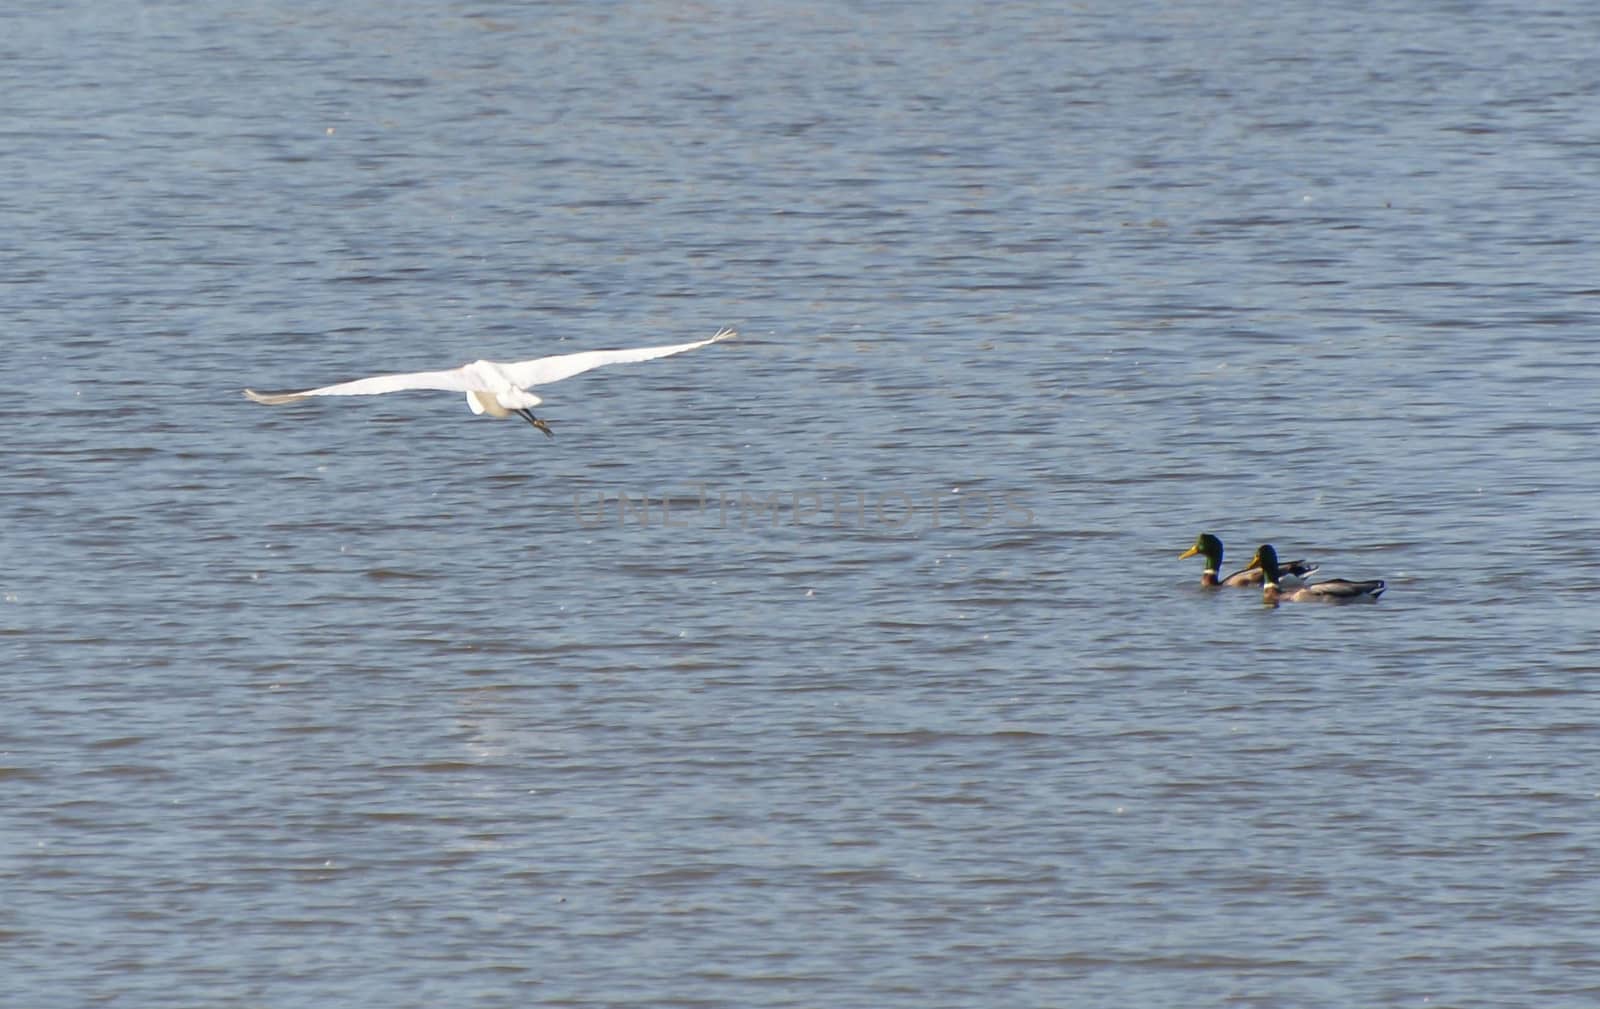 Flying white heron passes three ducks